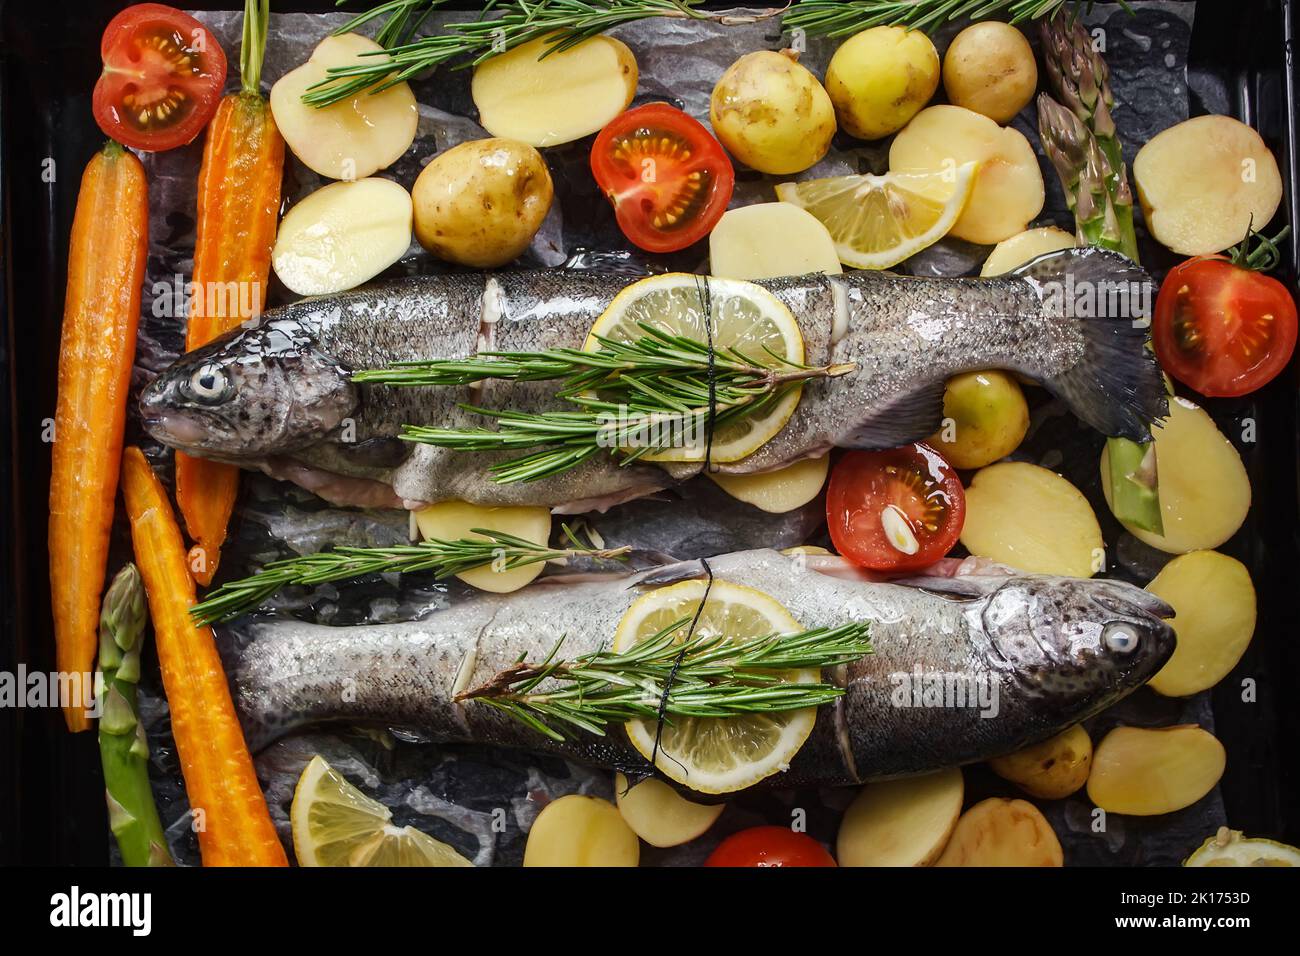 Pesce persico alla griglia con erbe aromatiche, spezie e verdure. Cibo di mare sano per la dieta, vista dall'alto Foto Stock